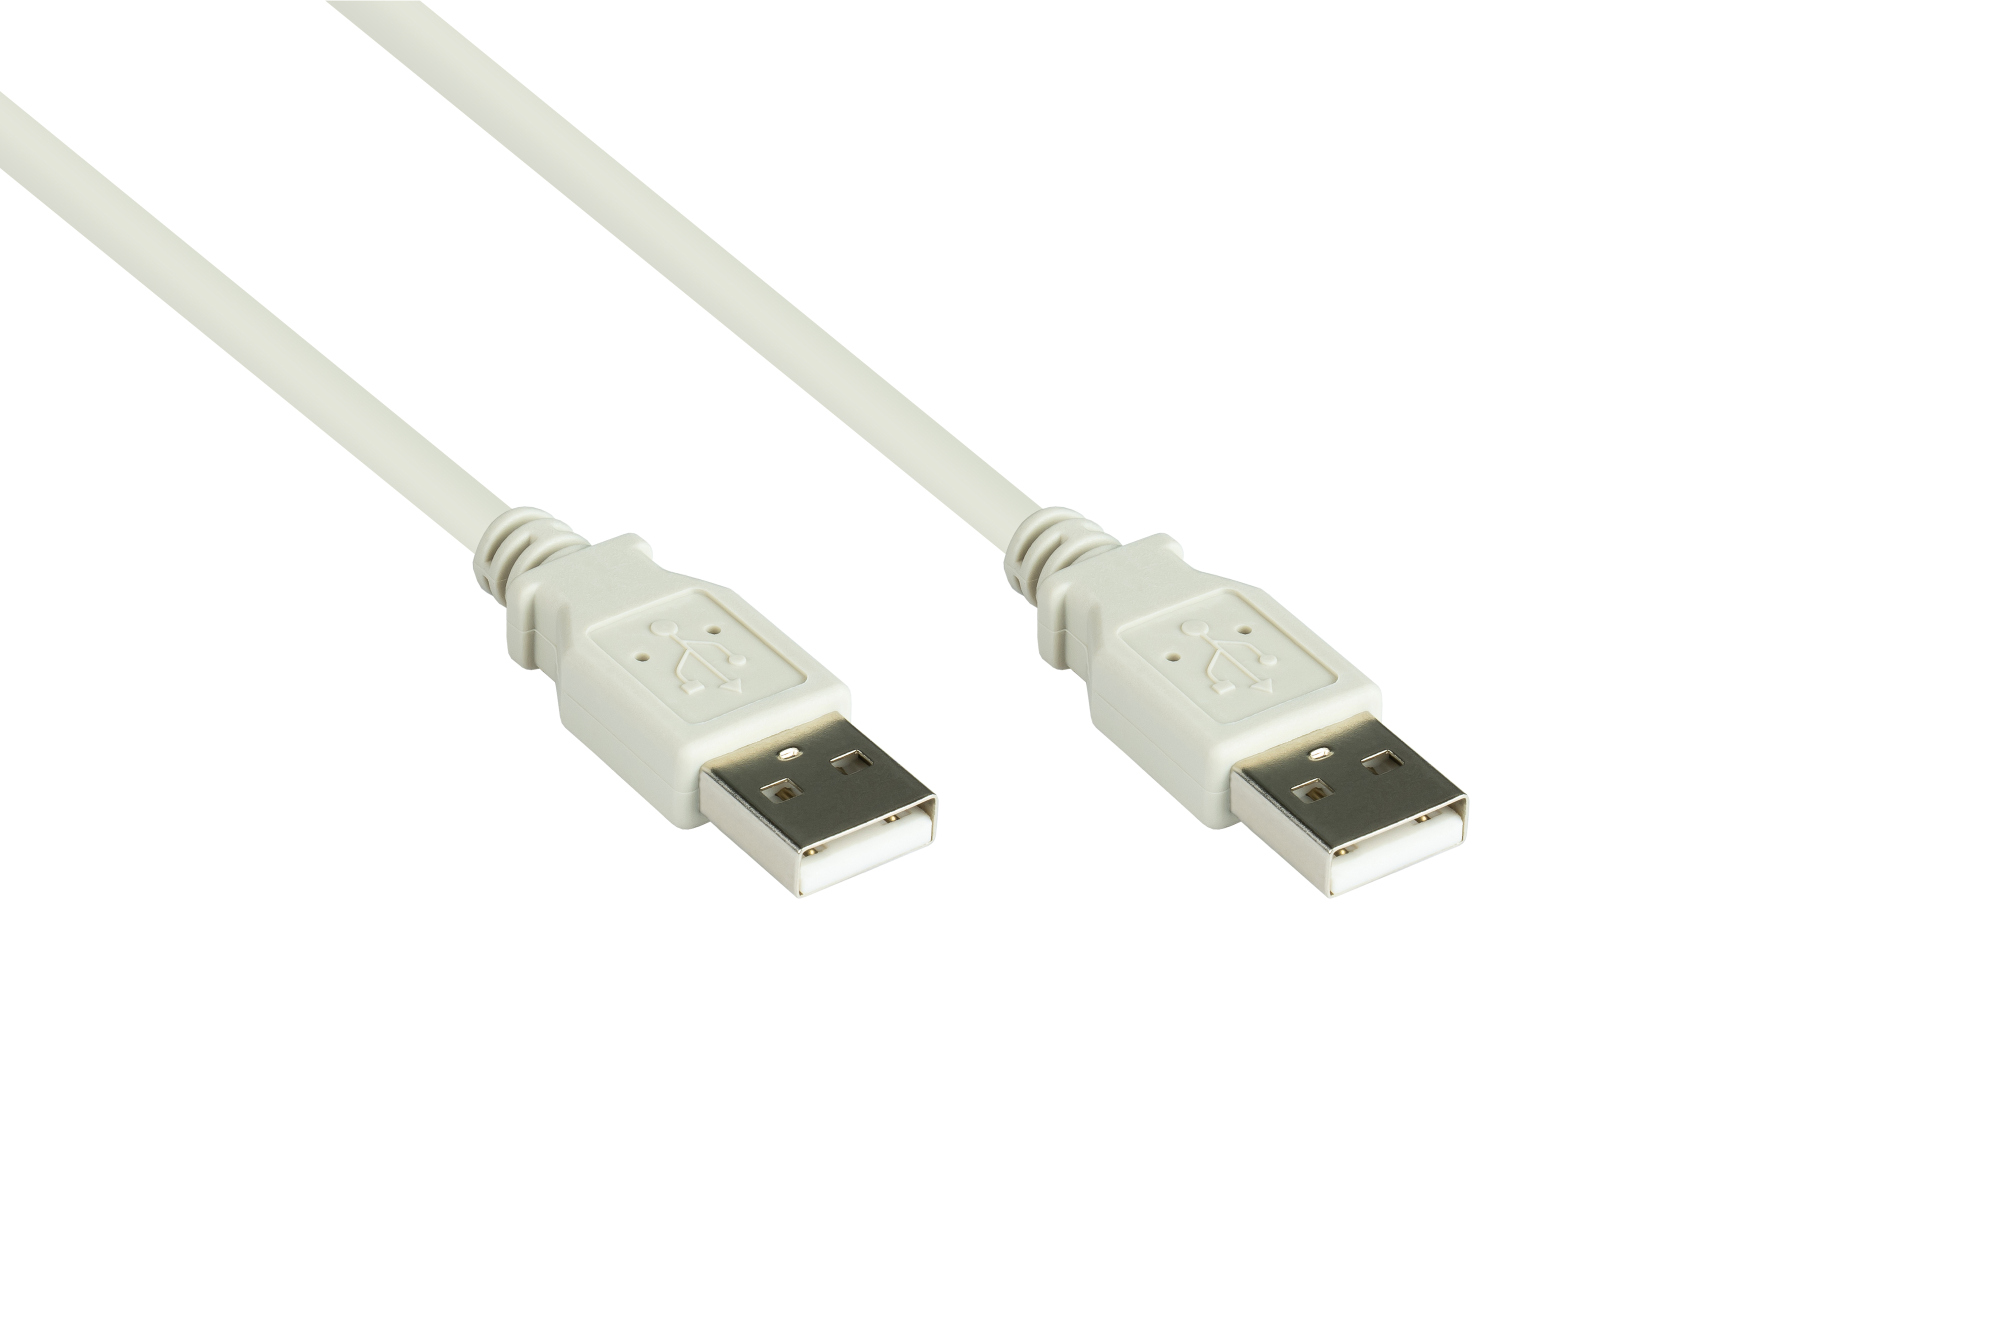 Anschlusskabel USB 2.0 Stecker A an Stecker A, grau, 0,5m, Good Connections®